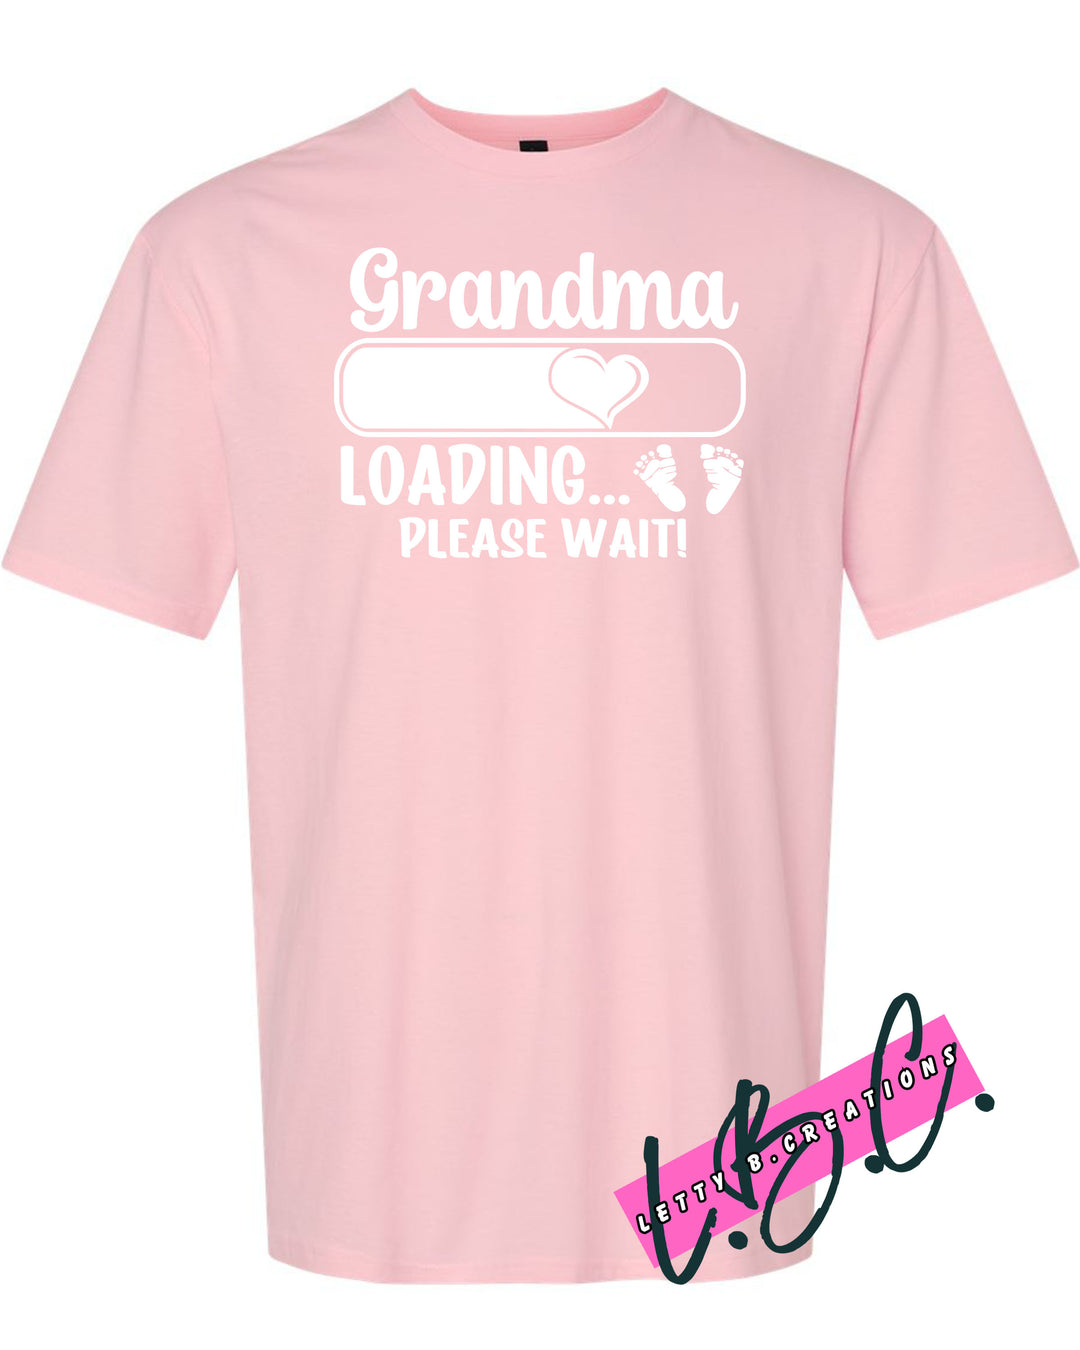 Grandma loading new baby graphic t-shirt